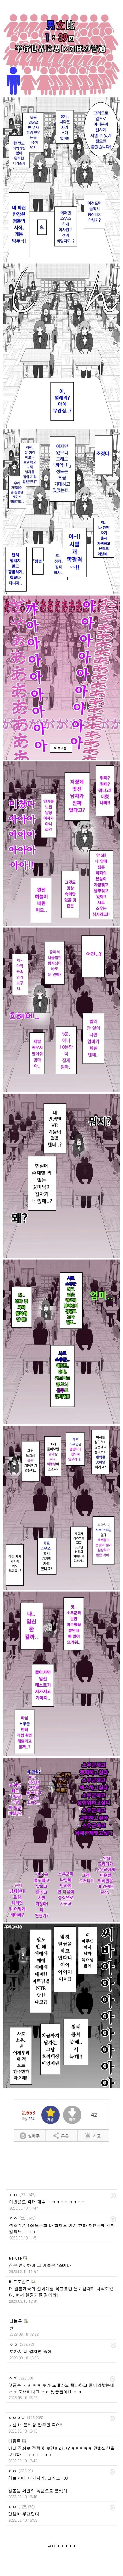 만화갤러리 조회수 1위, 남녀성비 1:39 세계 | mbong.kr 엠봉